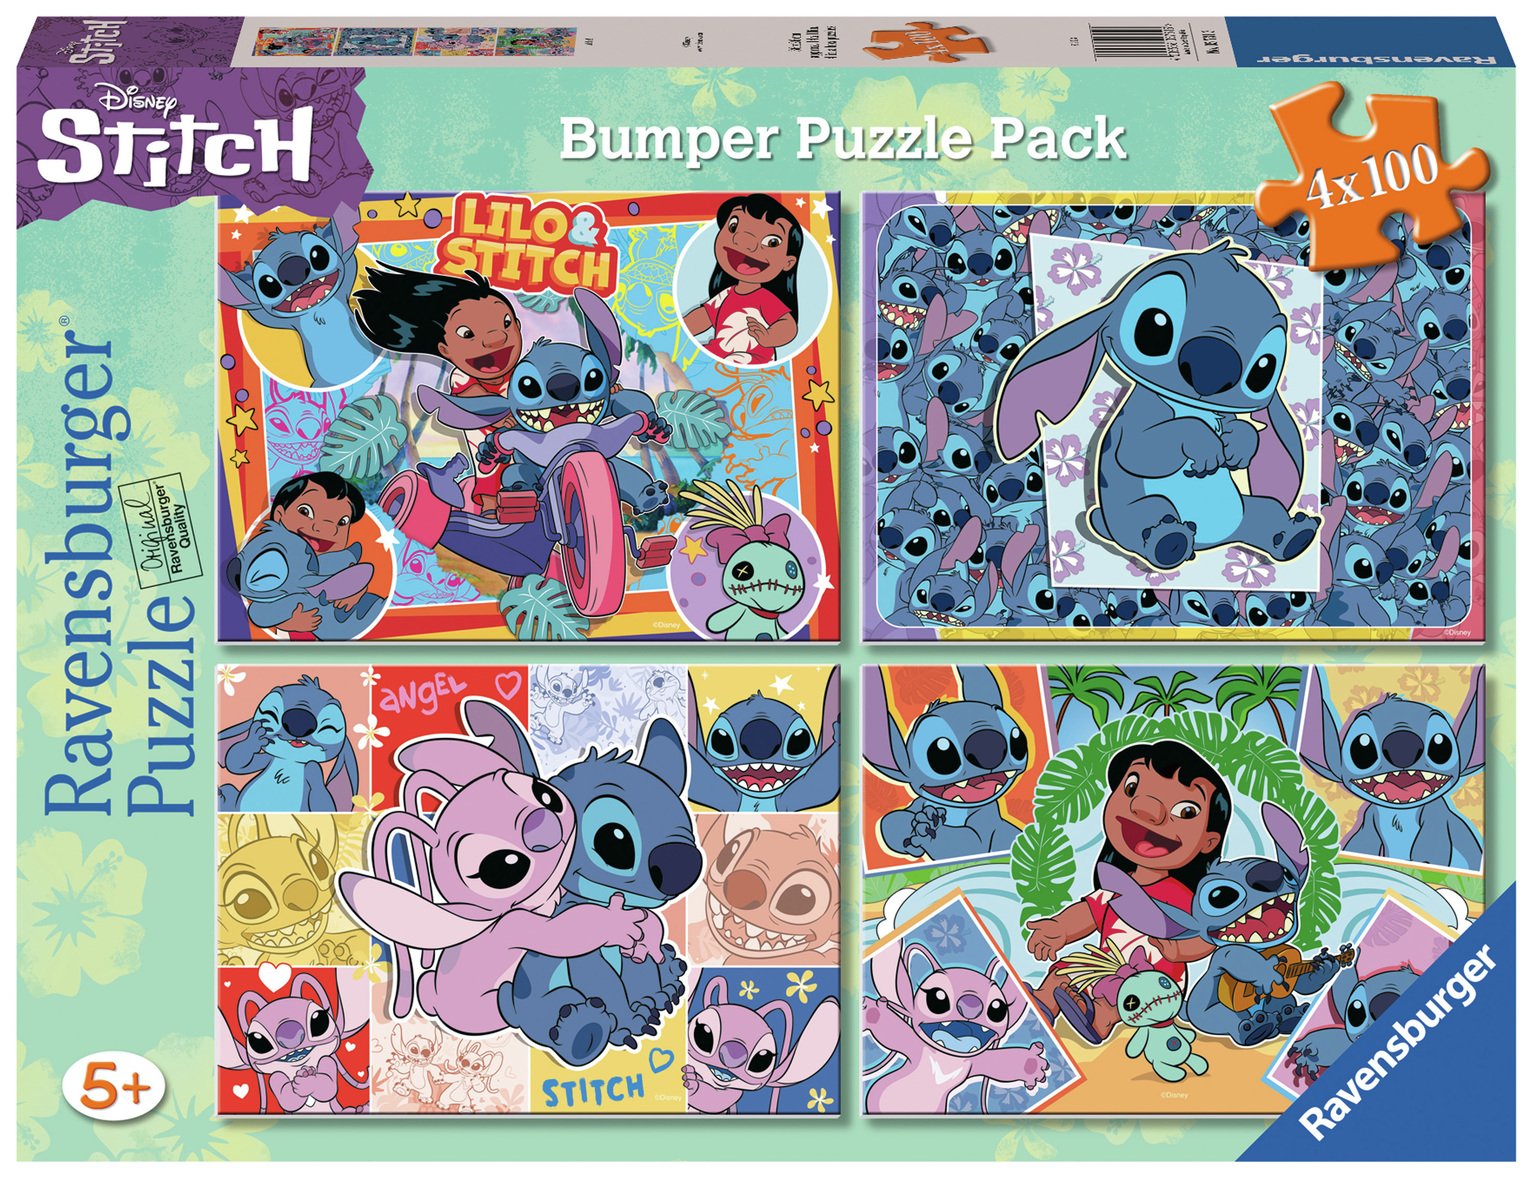 Ravensburger Stitch 4x100 Piece Puzzle Bumper Pack